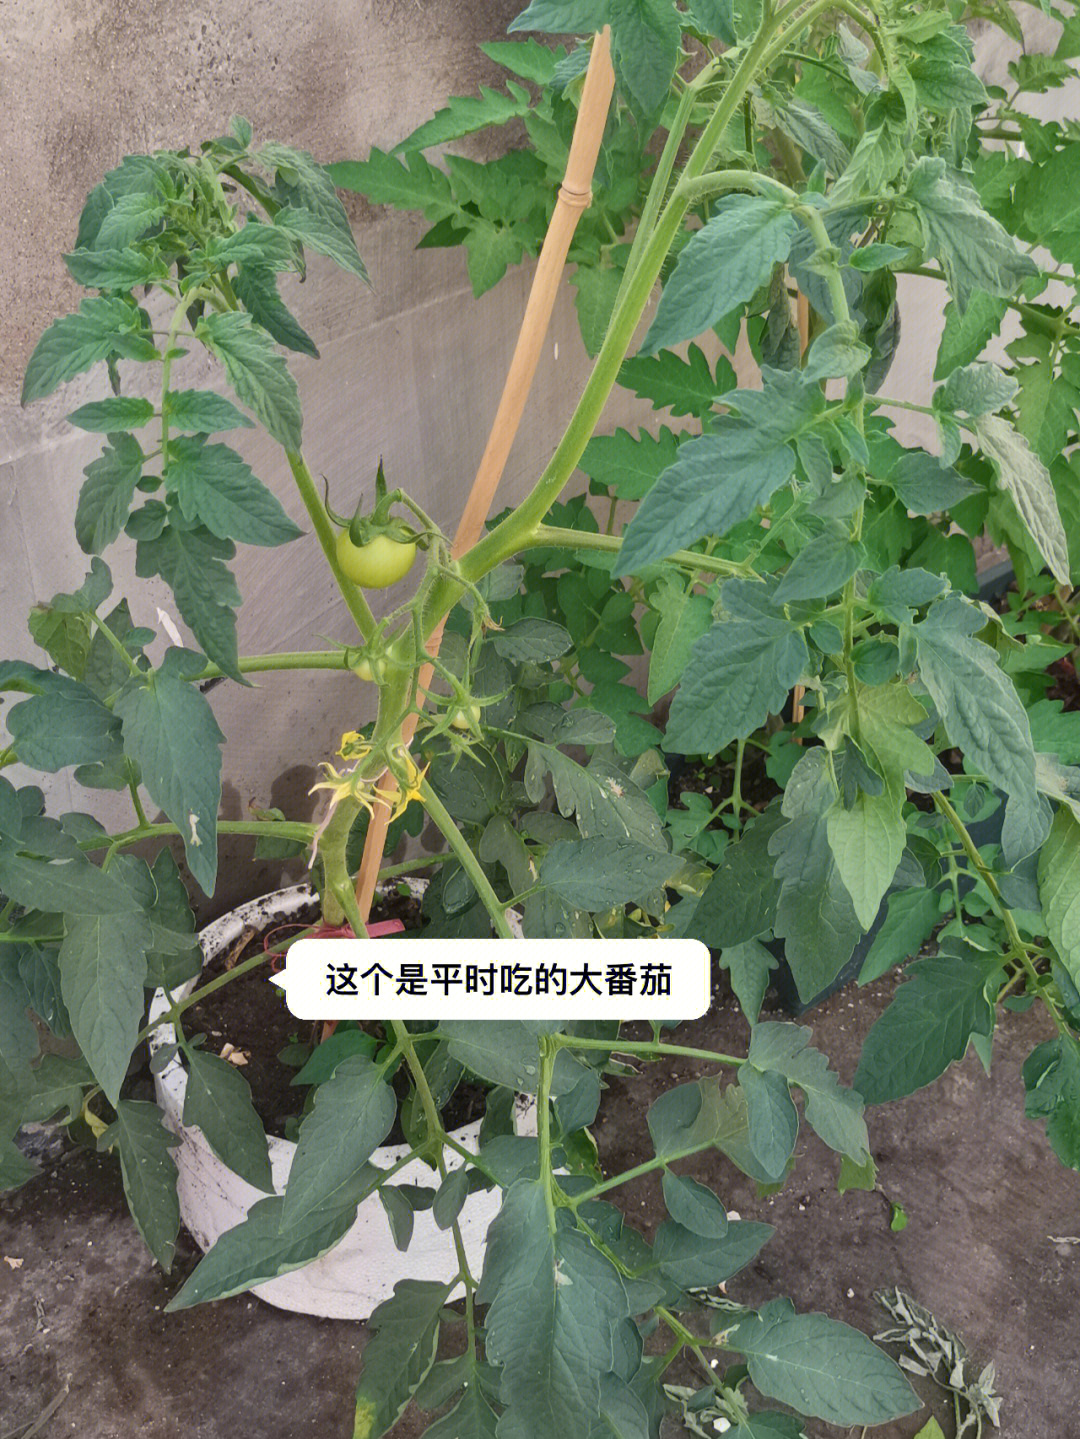 后面的是在pxx上买的种子老板说是瀑布番茄,明天给它们重新插点枝条